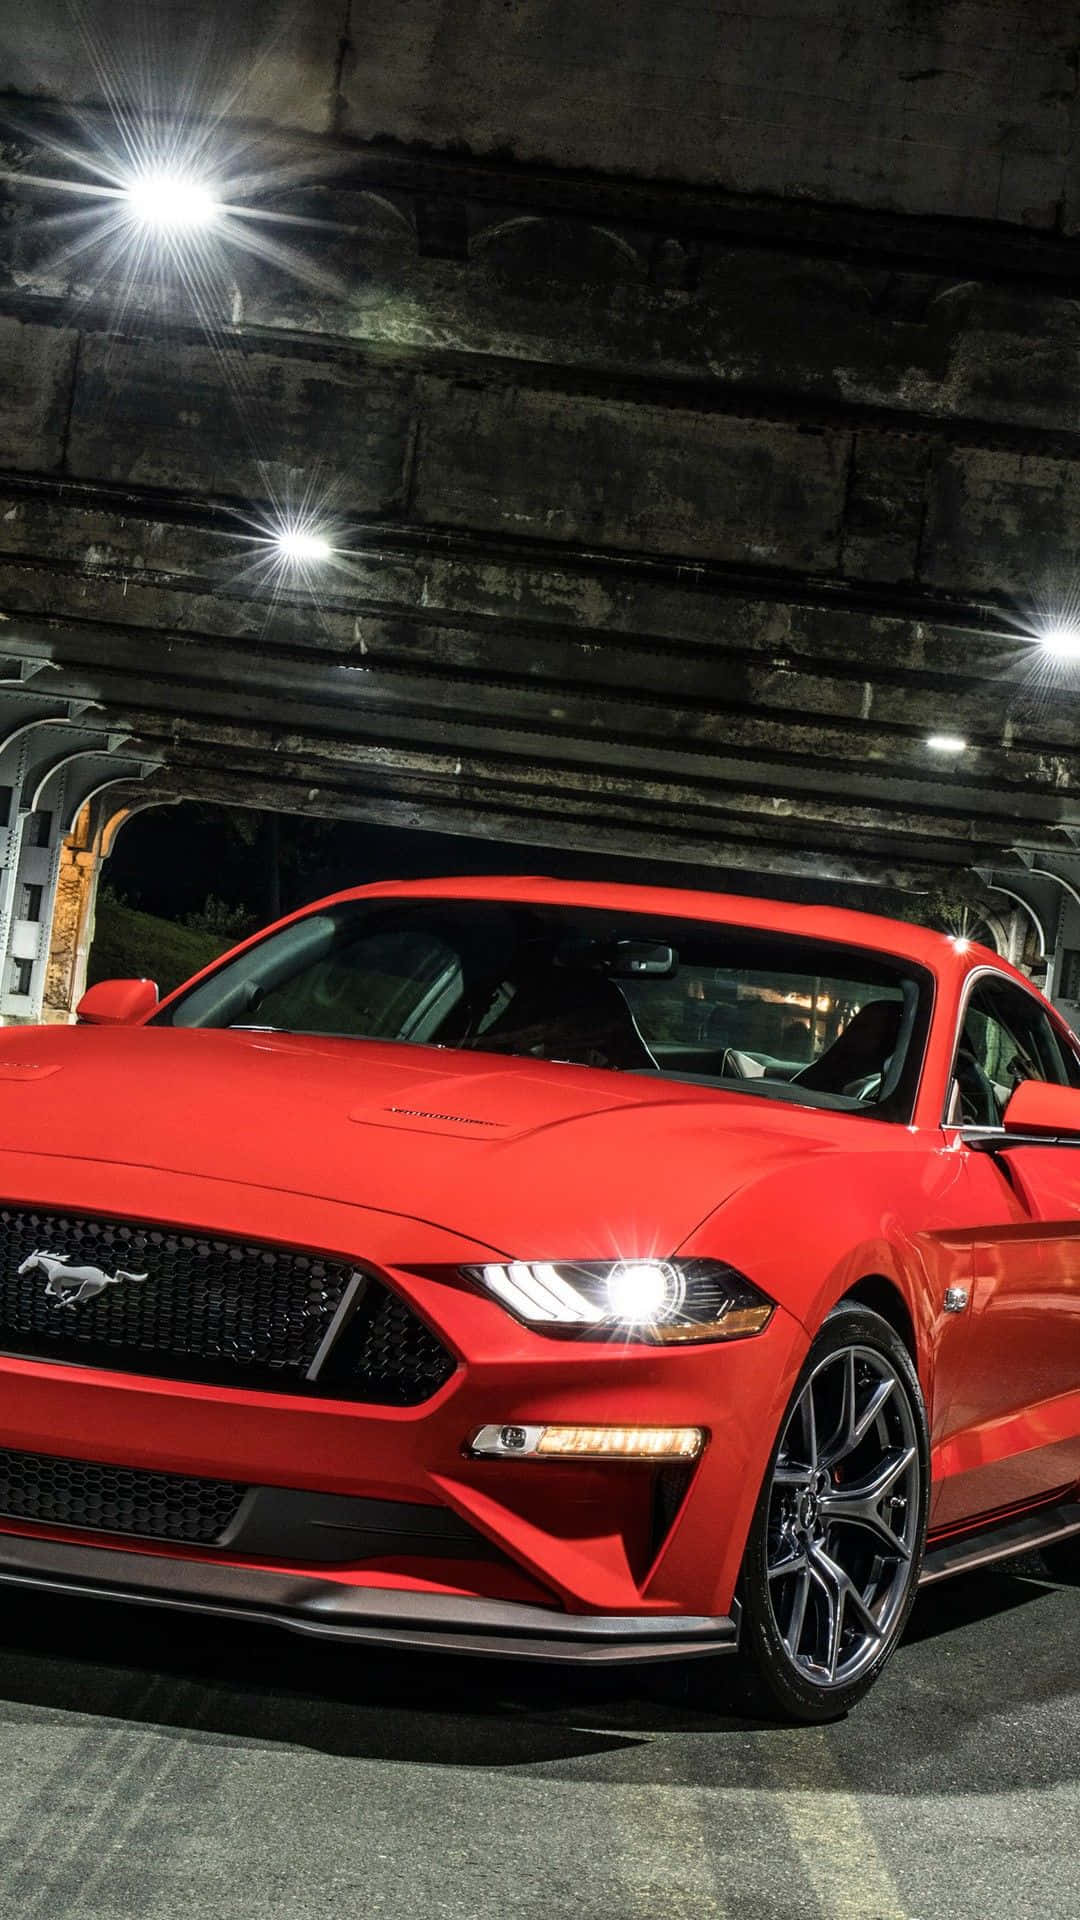 Den røde 2019 Ford Mustang GT parkeret i en tunnel. Wallpaper